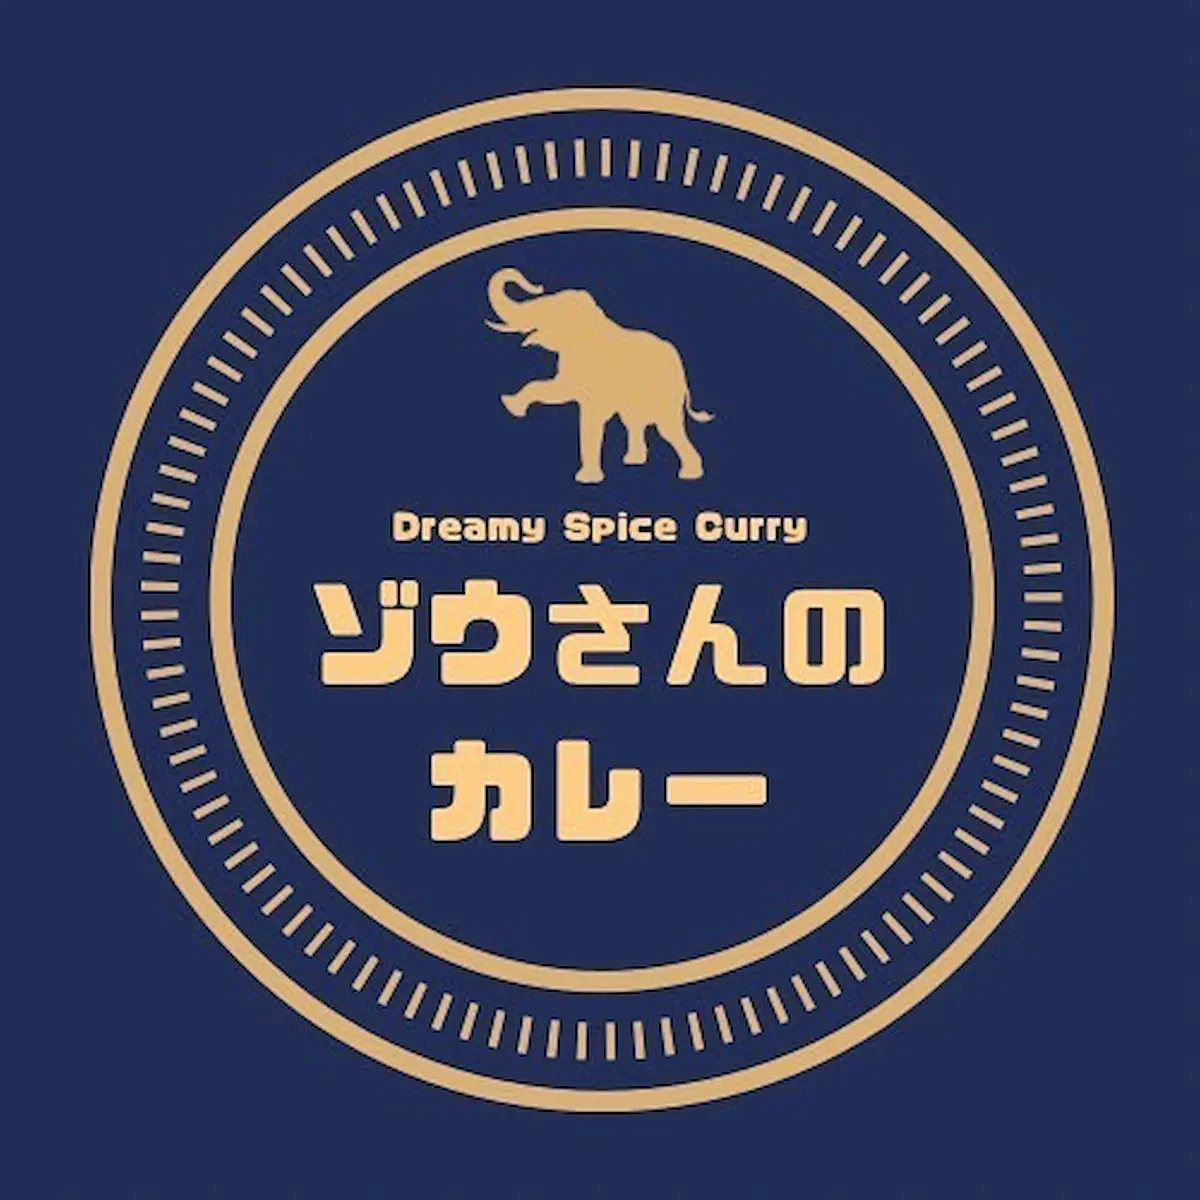 ゾウさんのカレー 大牟田店が11月4日にオープンするみたい。限定でオリジナルカレー無料提供！